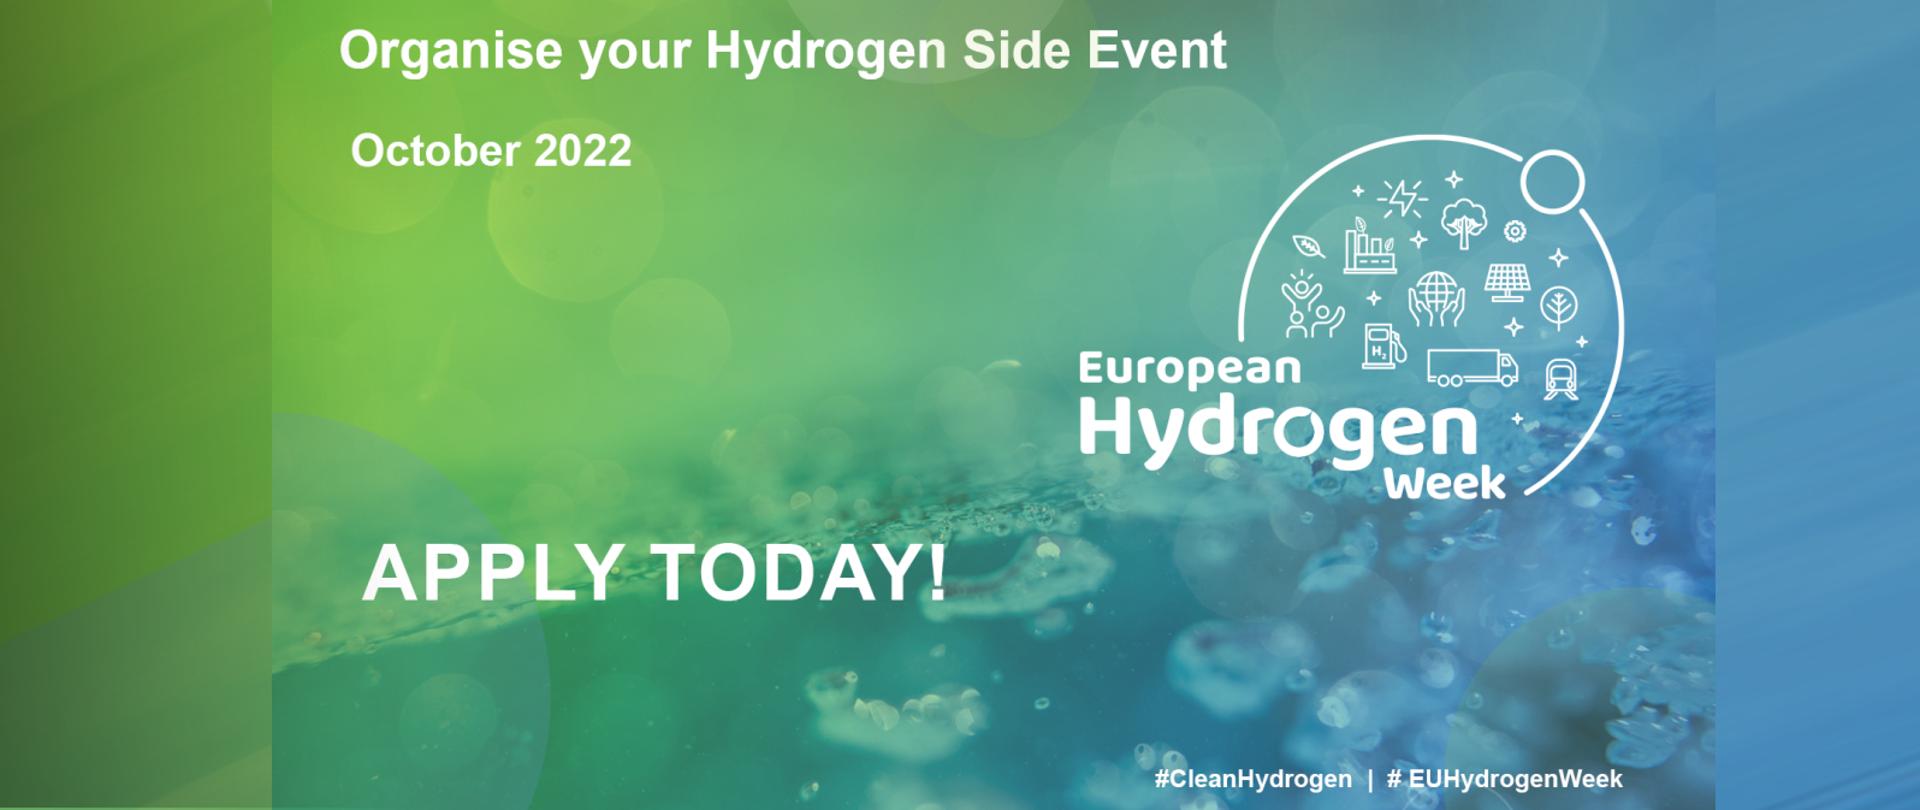 Zapraszamy na wydarzenie European Hydrogen Week 2022